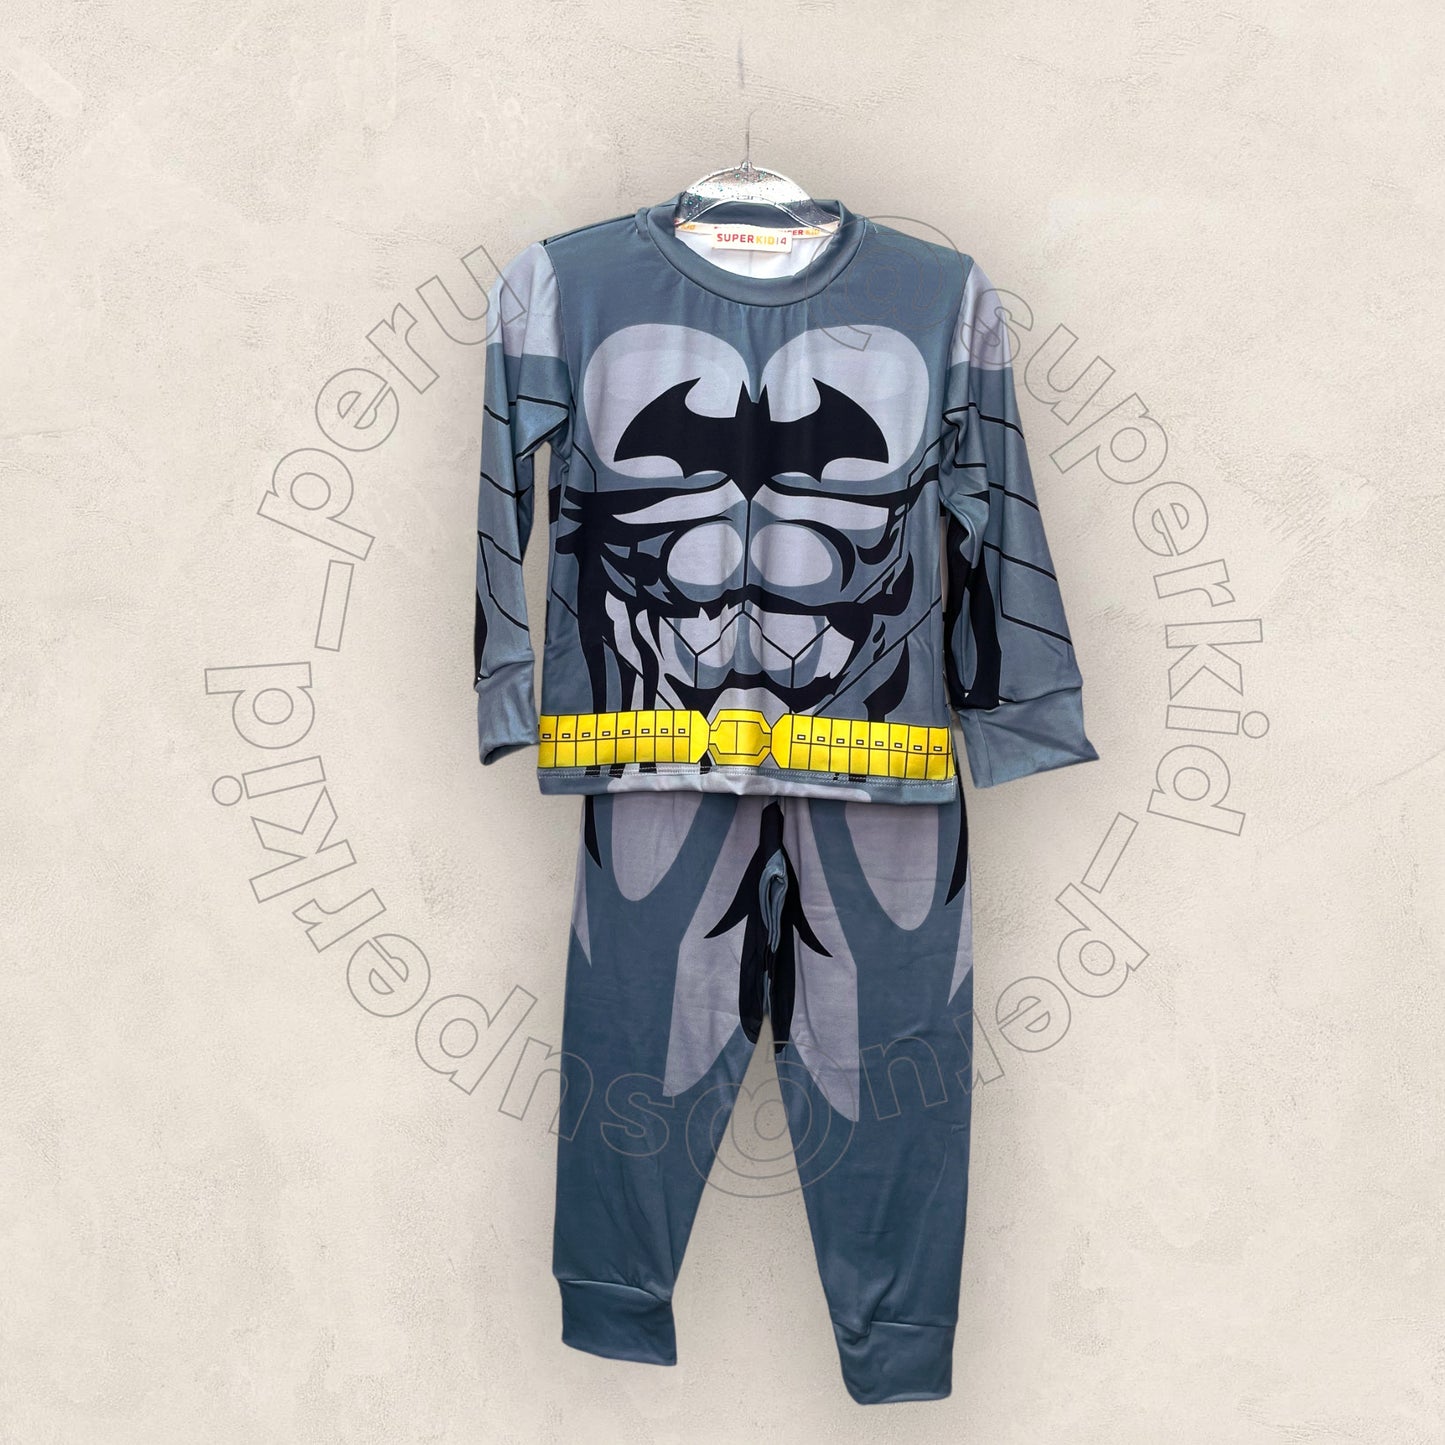 Promoción de Pijama traje Batman